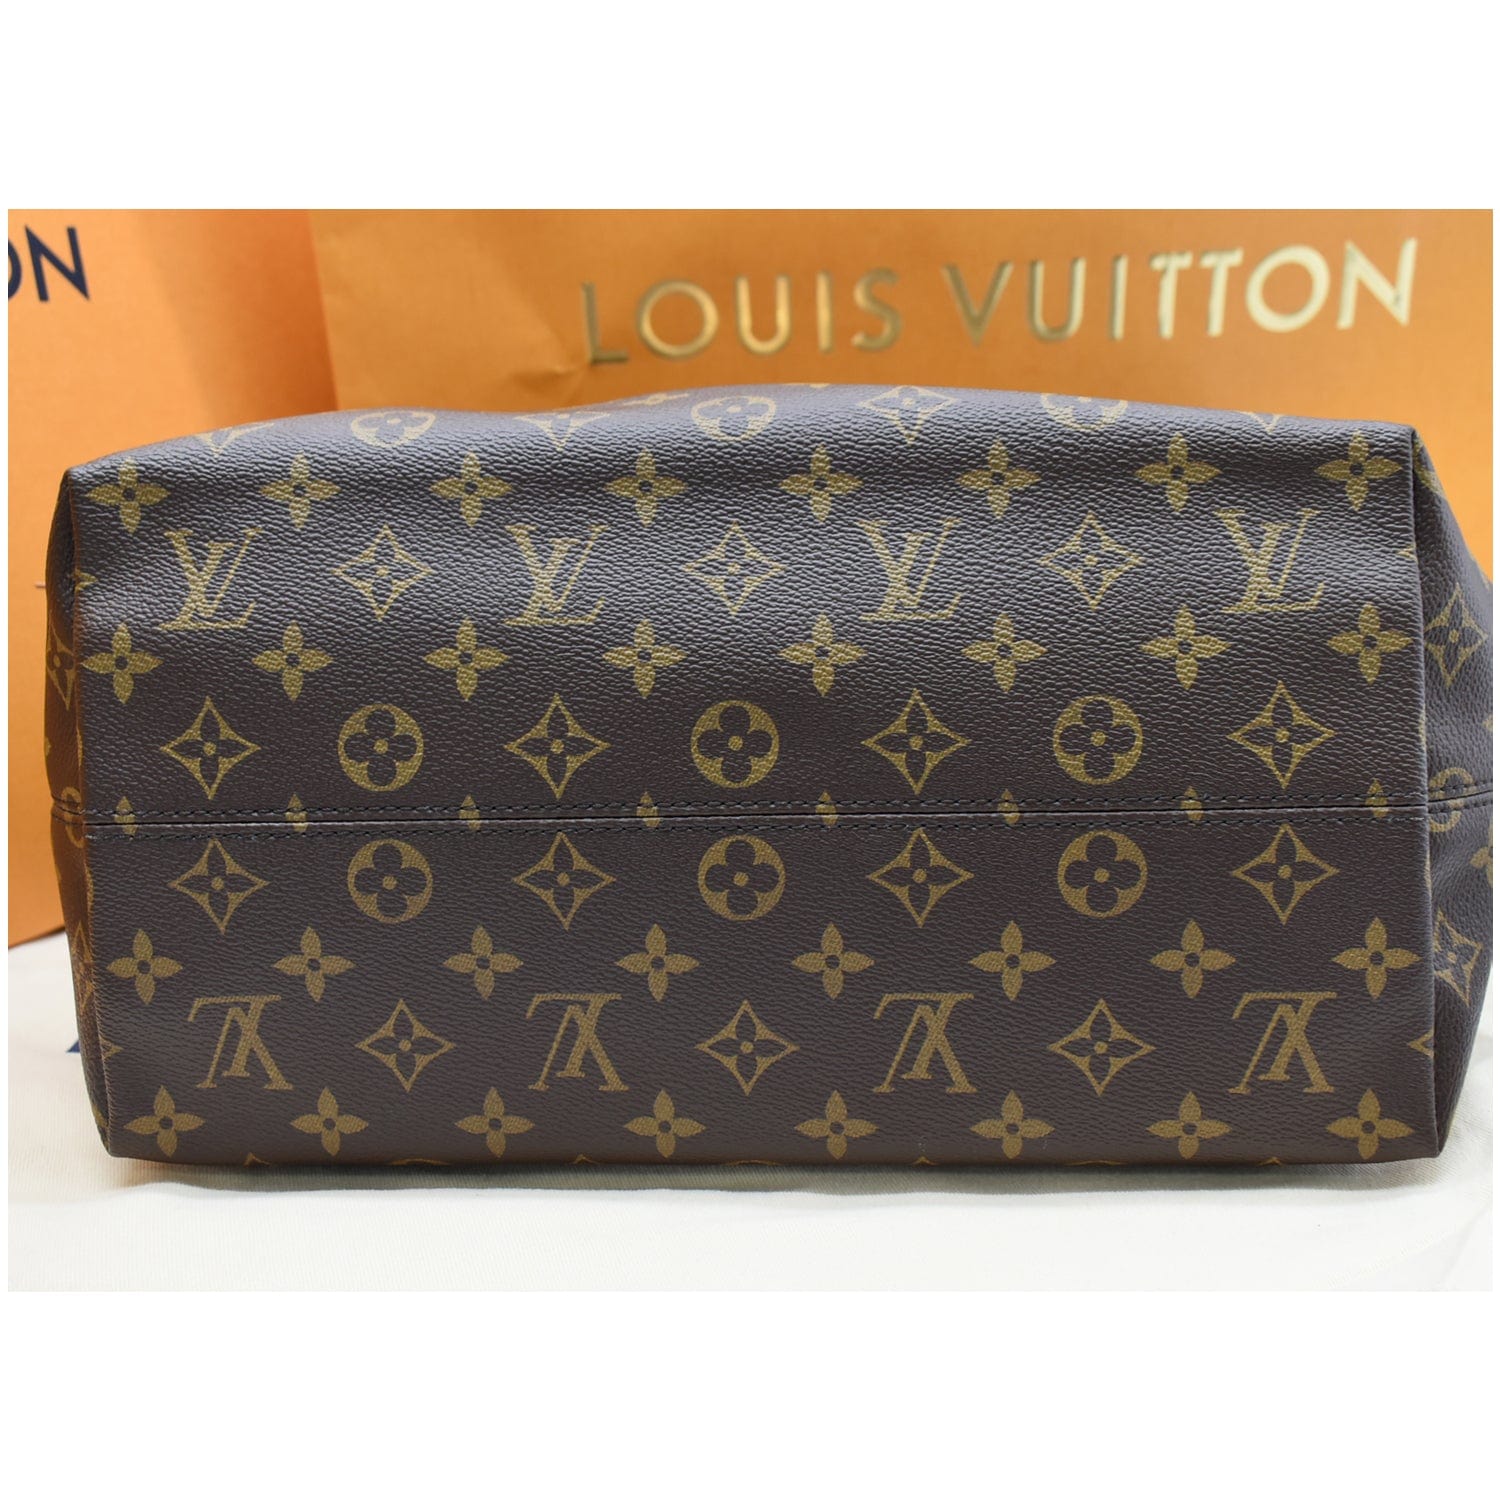 Louis Vuitton e Bag Monogram Canvas Brown 233431423